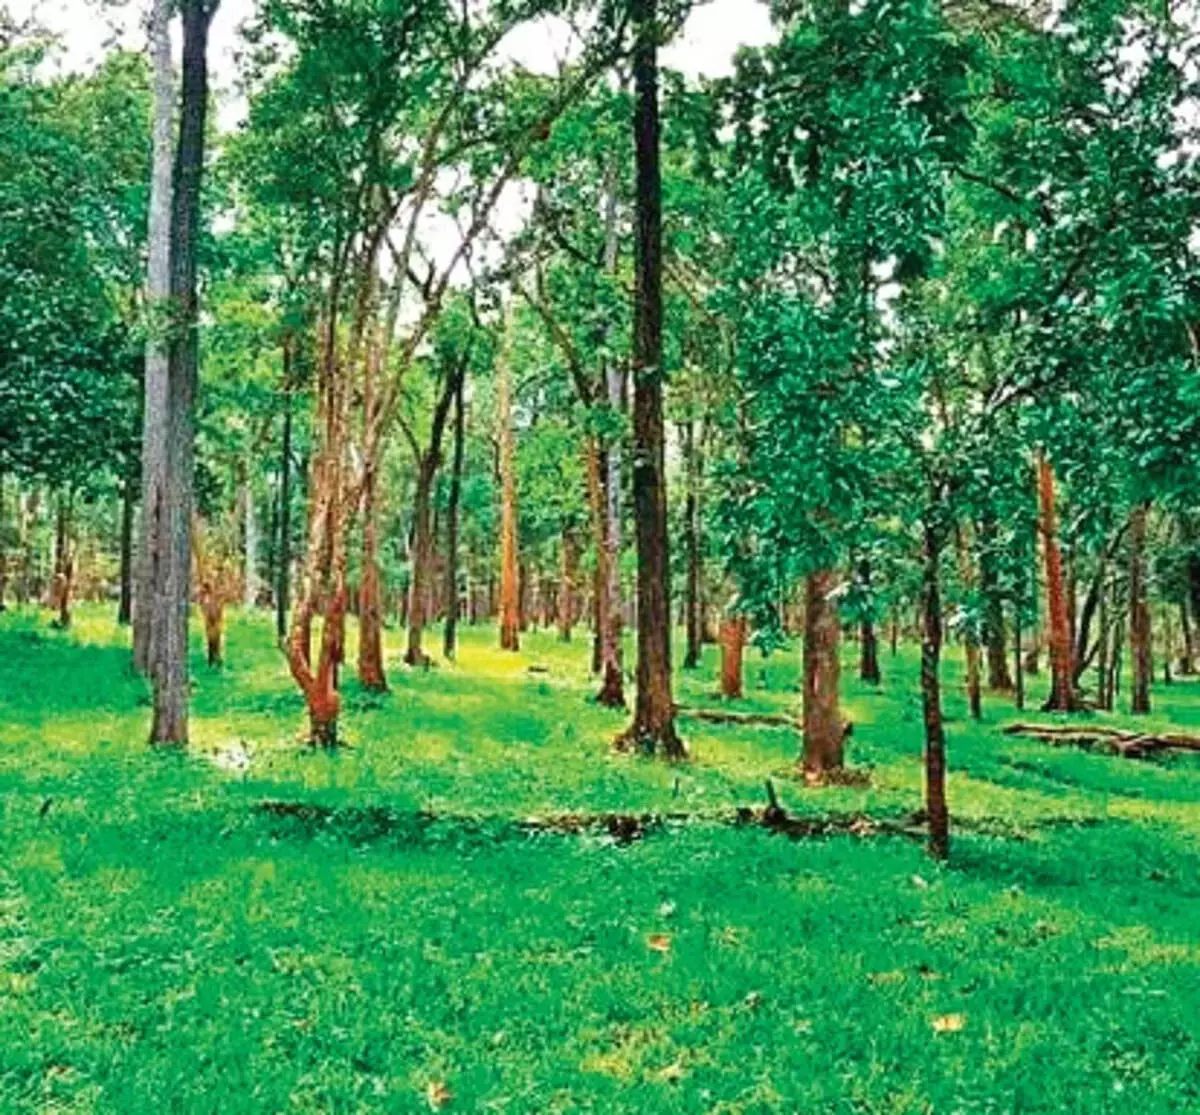 Telangana ने पर्यावरण और वन विभाग के लिए 1,064 करोड़ रुपये मंजूर किए